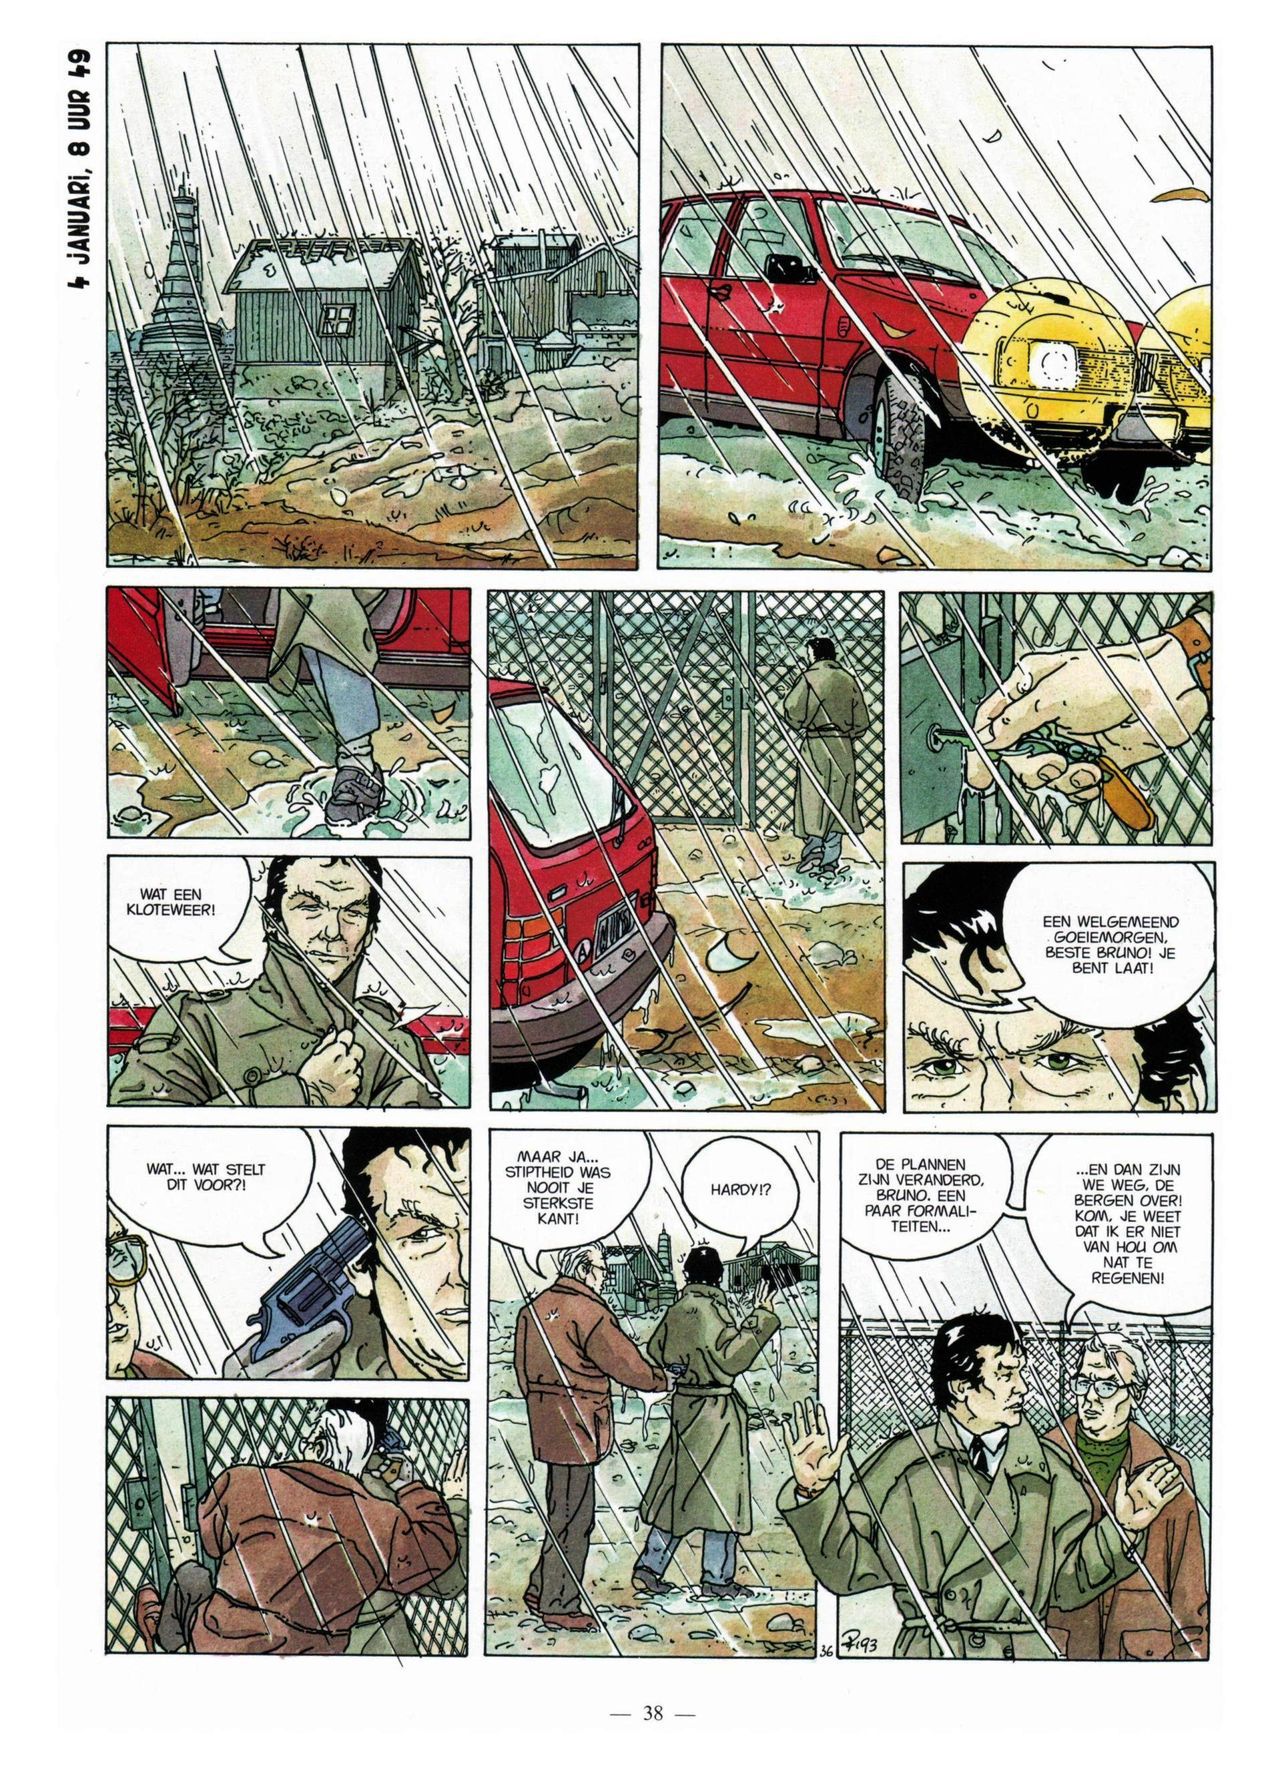 Anna Stein - 03 - De Laatste Alpengloed (Dutch) Engelstalige strips die op deze site staan, hier is de Nederlandse uitgave! 38